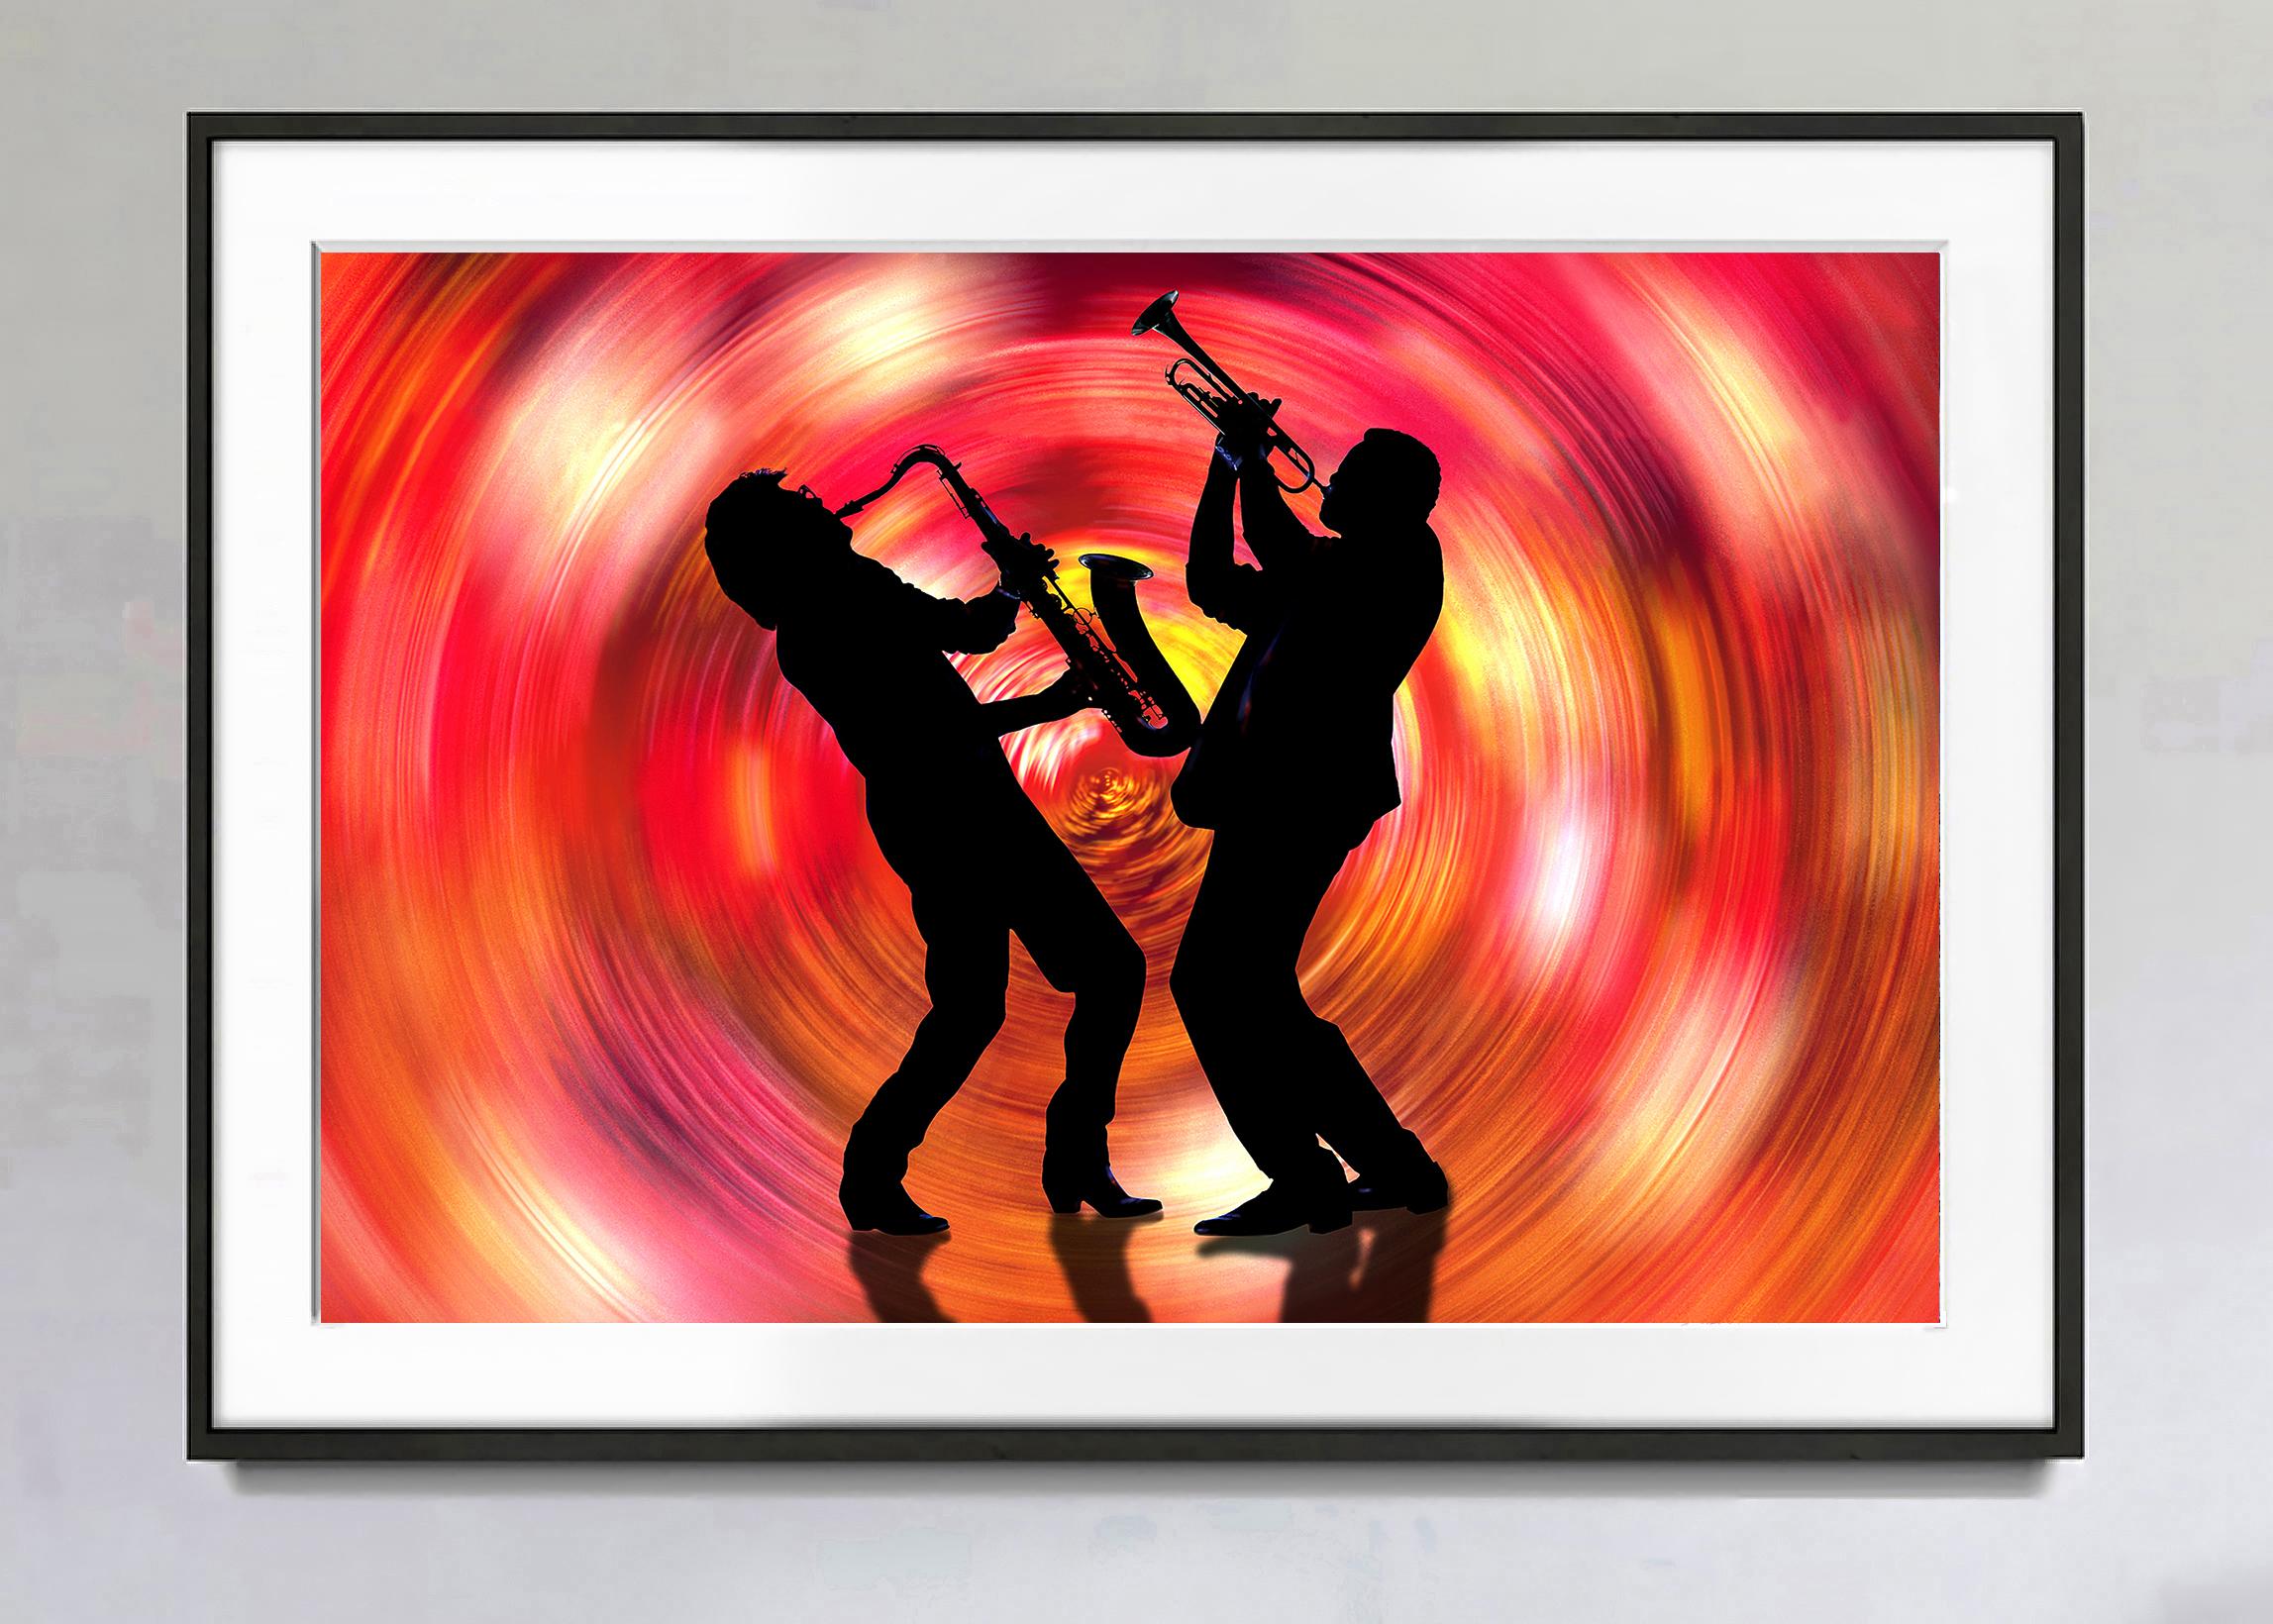 Jazzmusiker Saxophone und Trompetenwirbel in rotem Wirbel  - Musik ist Farbe (Zeitgenössisch), Photograph, von Mitchell Funk